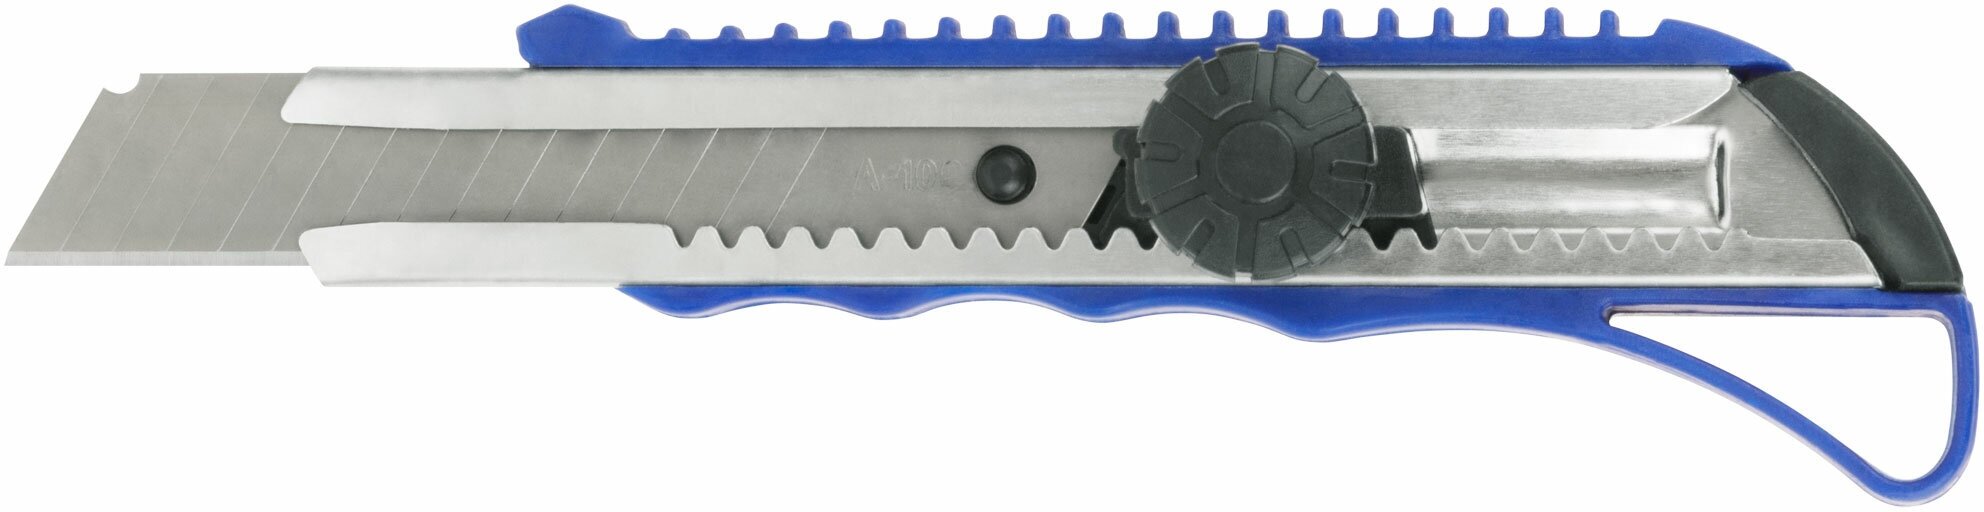 Нож технический пластиковый 18 мм, вращающийся прижим